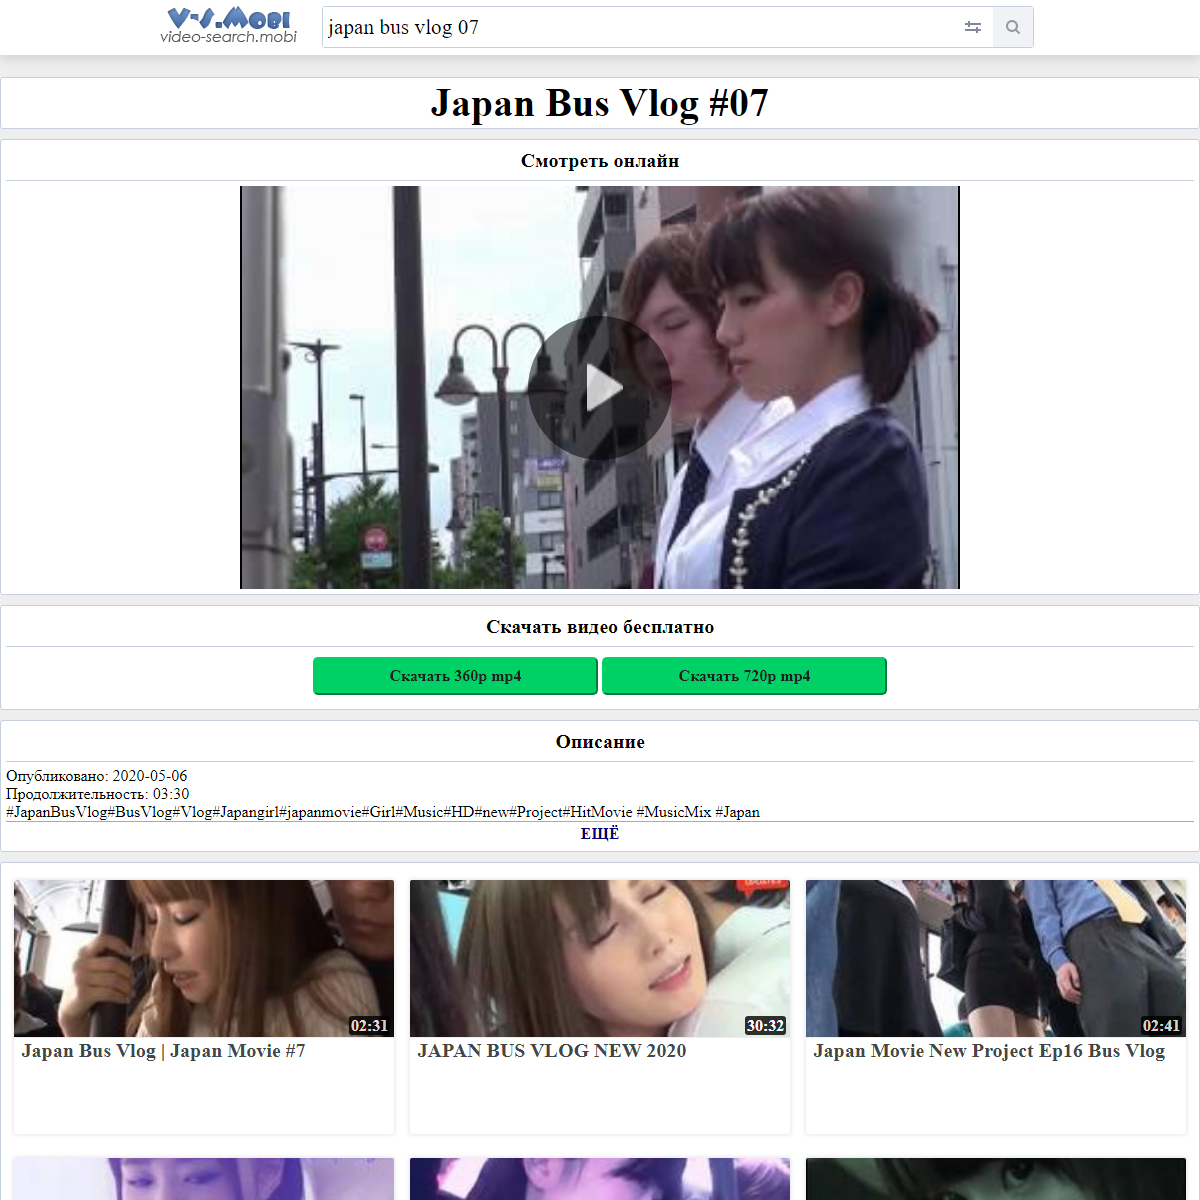 A complete backup of https://v-s.mobi/japan-bus-vlog-07-03:30